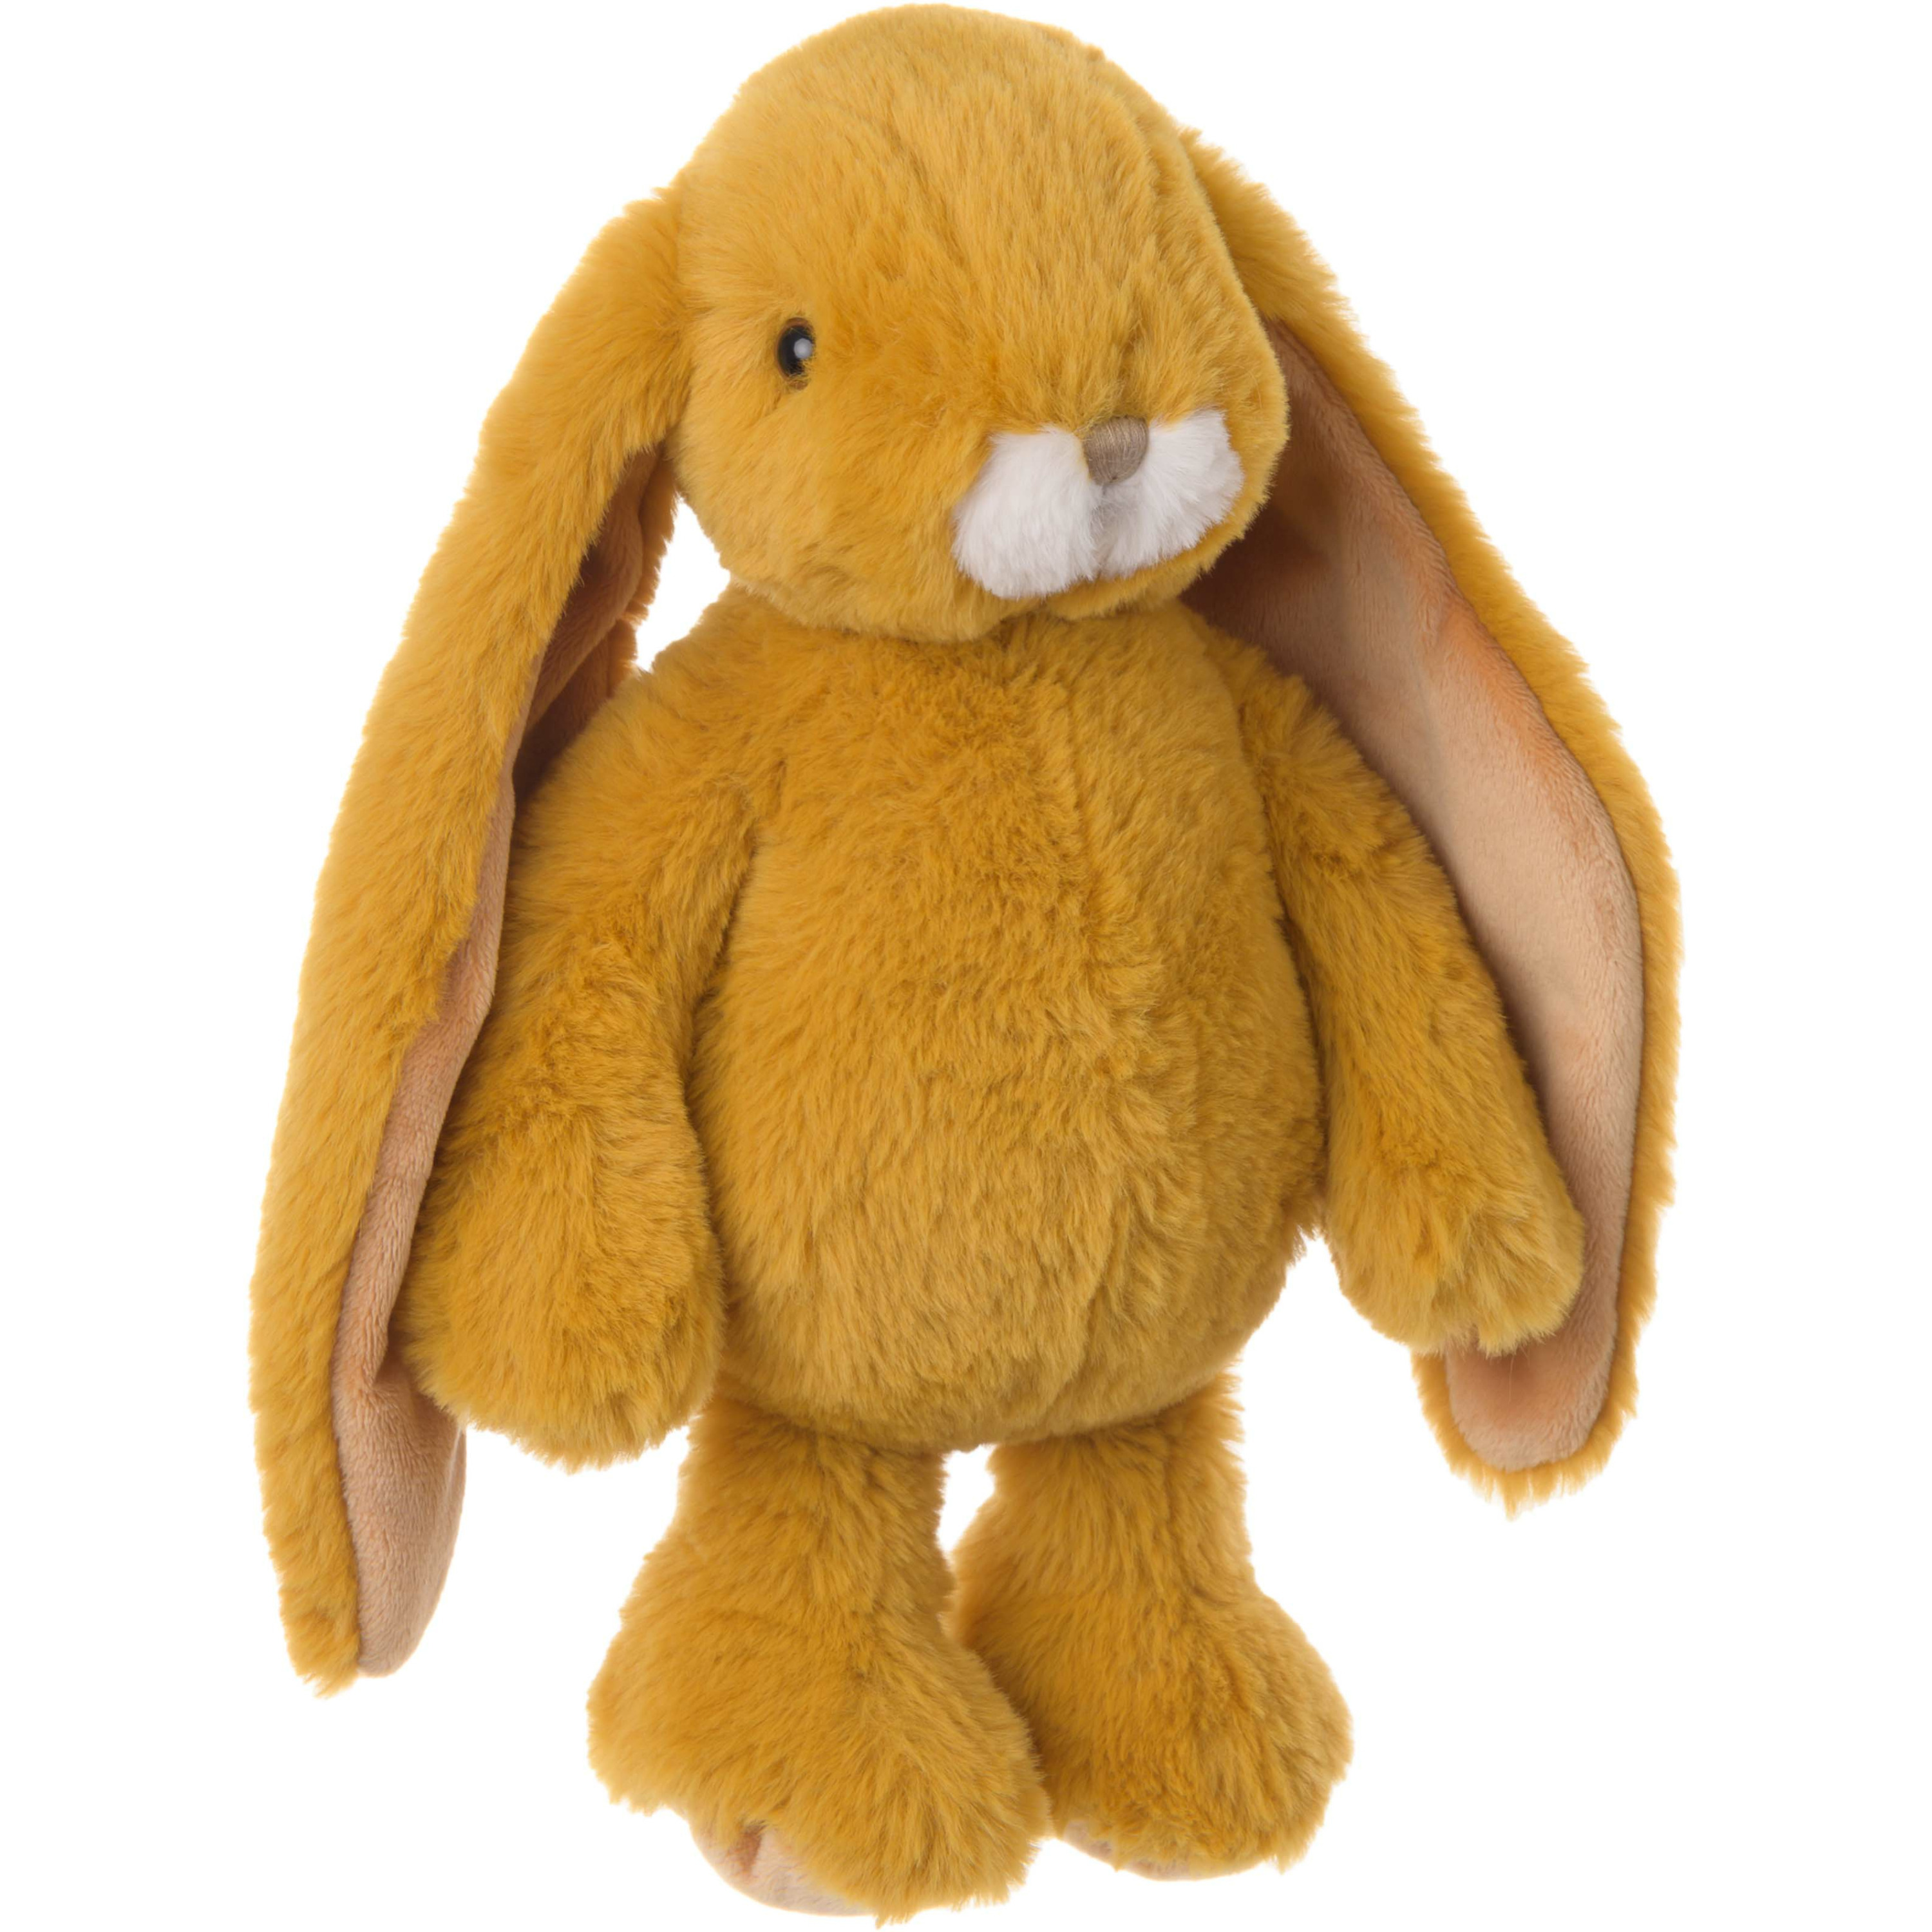 Bukowski pluche konijn knuffeldier dark okergeel staand 30 cm luxe knuffels